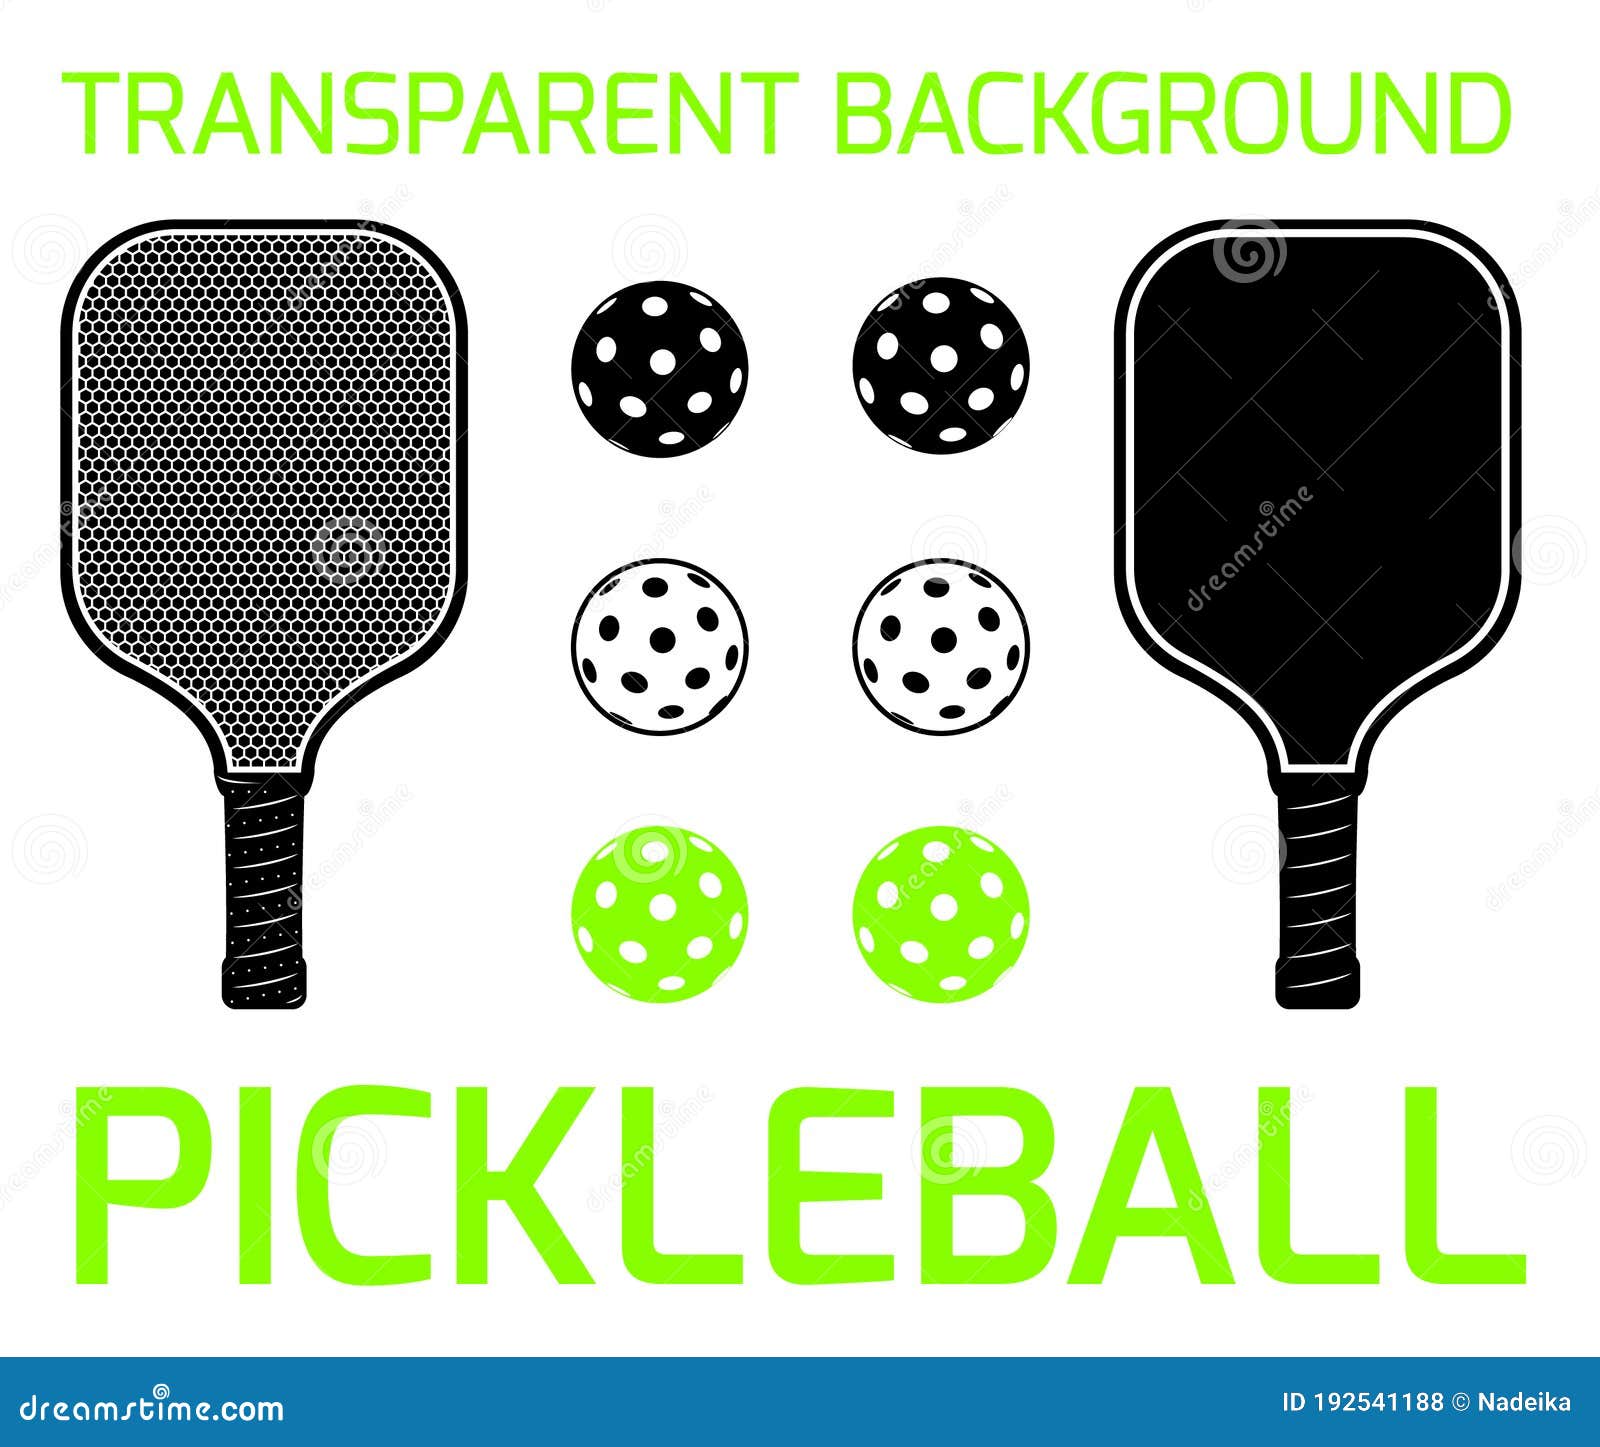 pickleball sport equipment